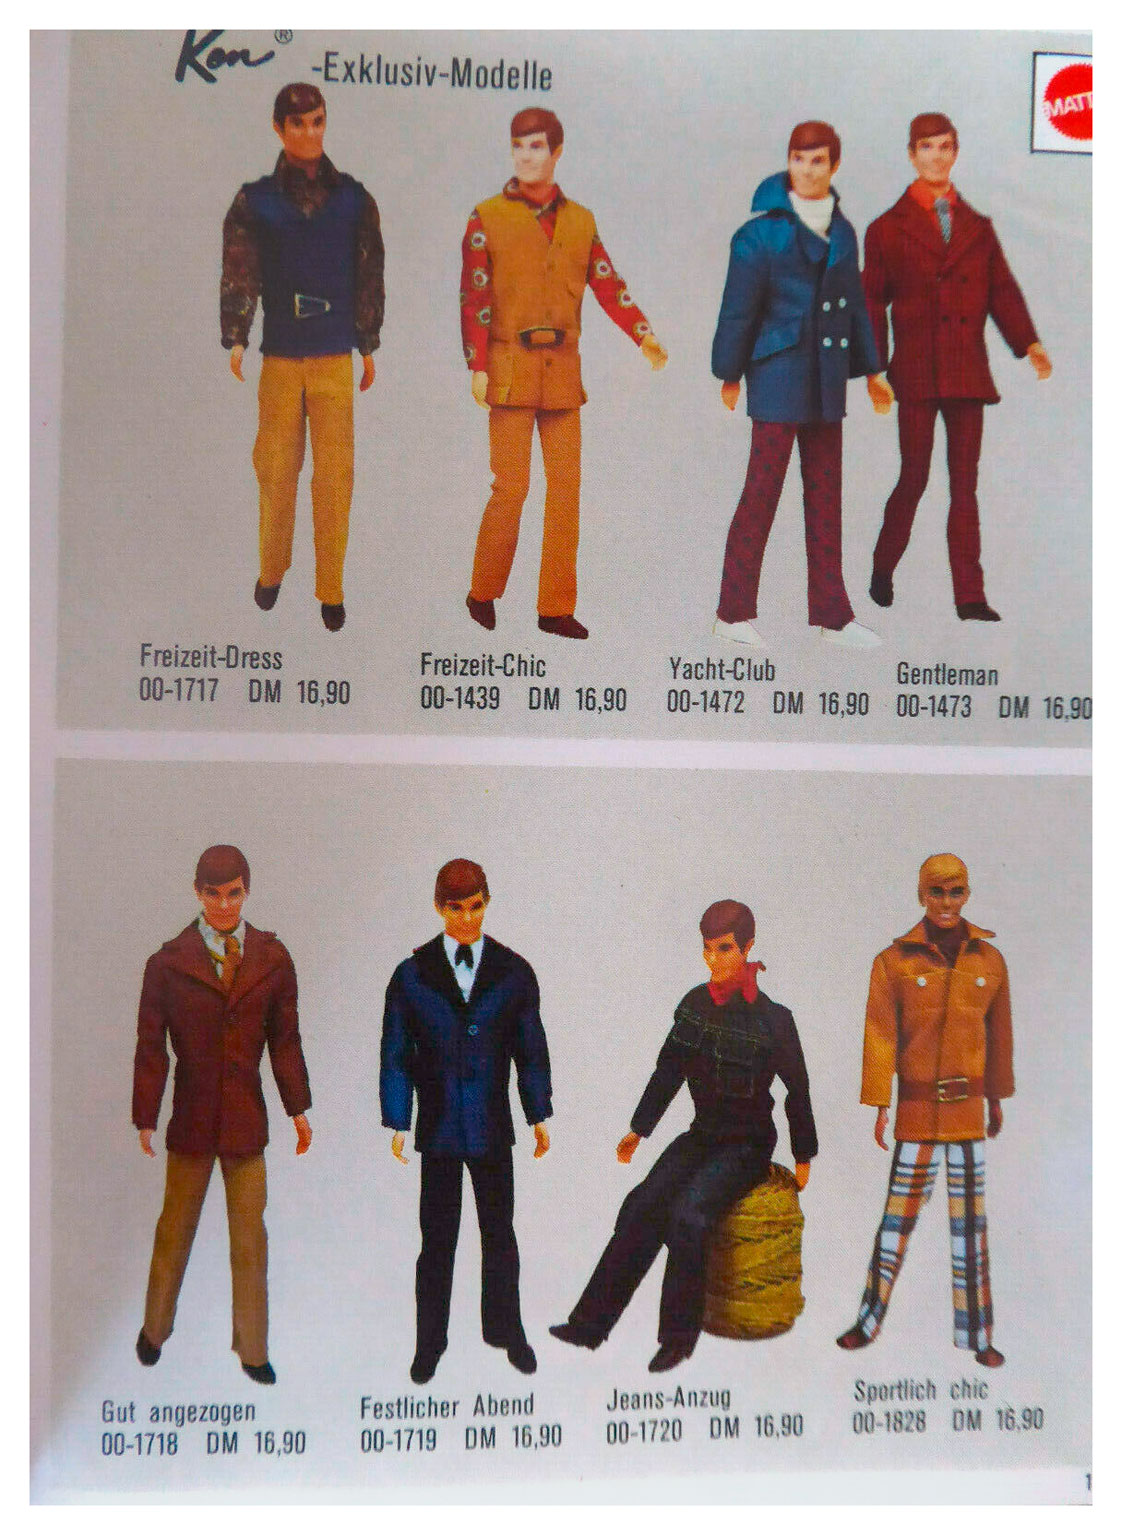 From 1973 German Barbie booklet